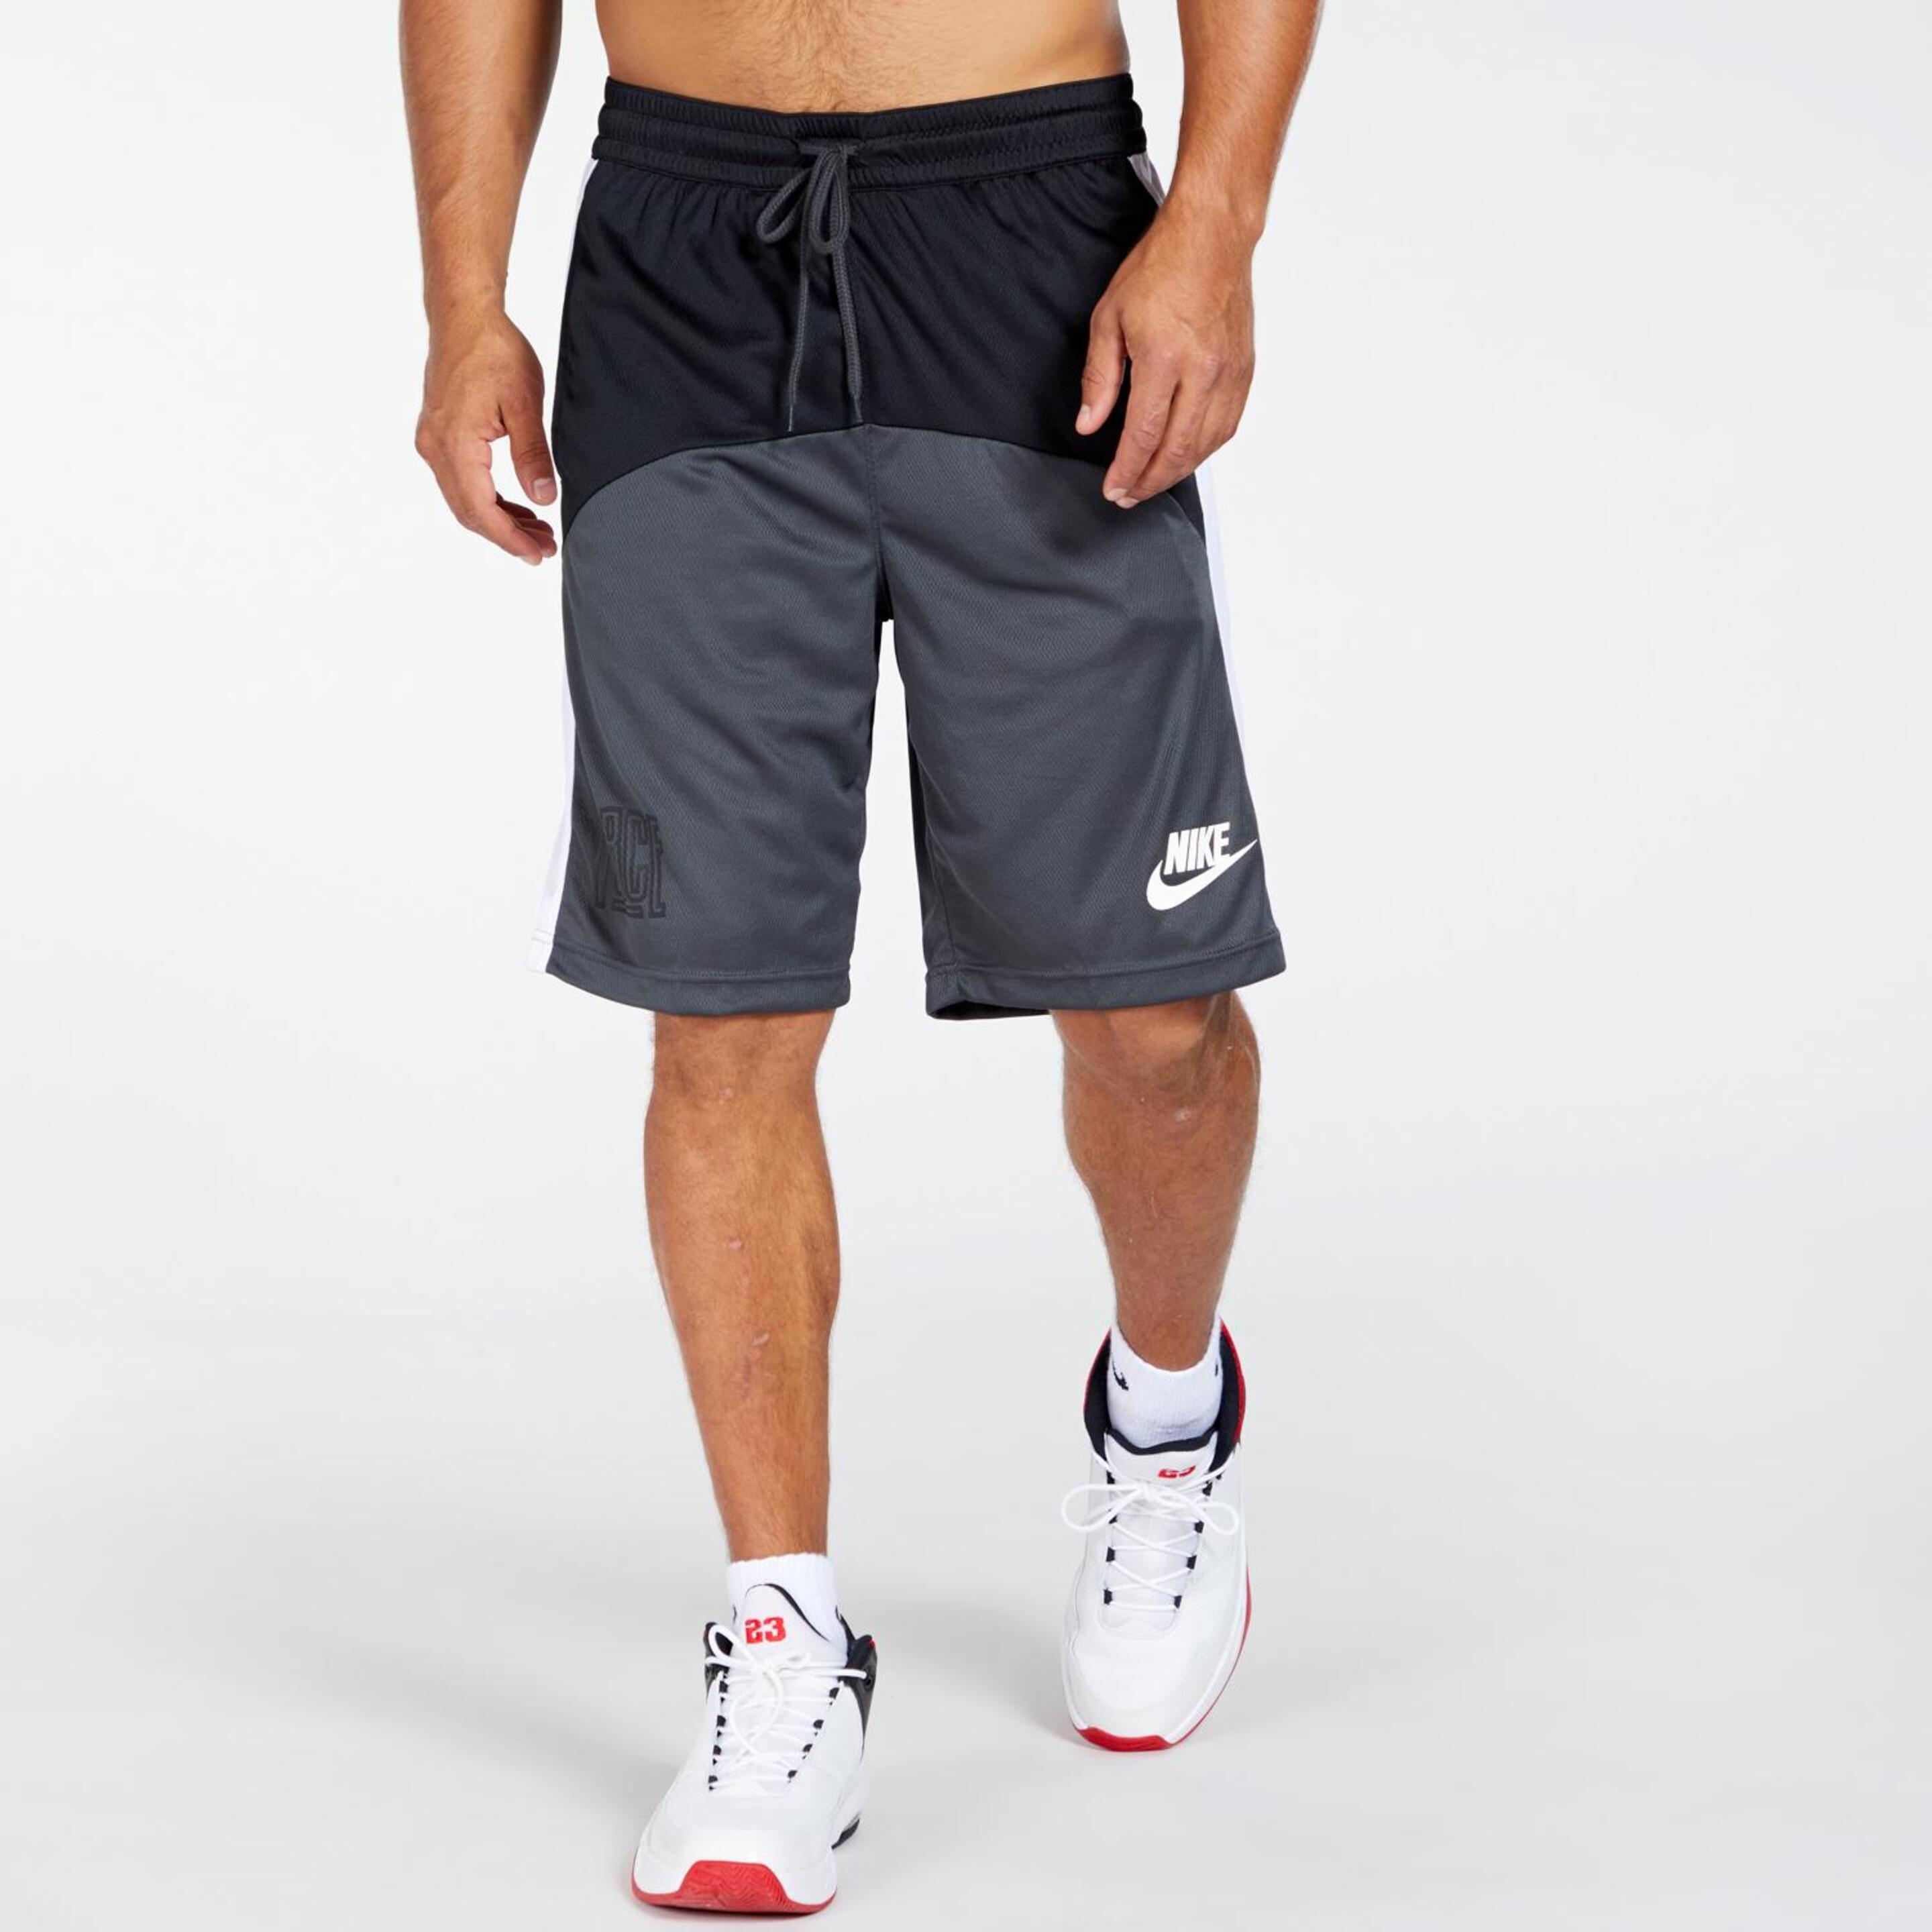 Nike Starting 5 - negro - Calções Basquetebol Homem